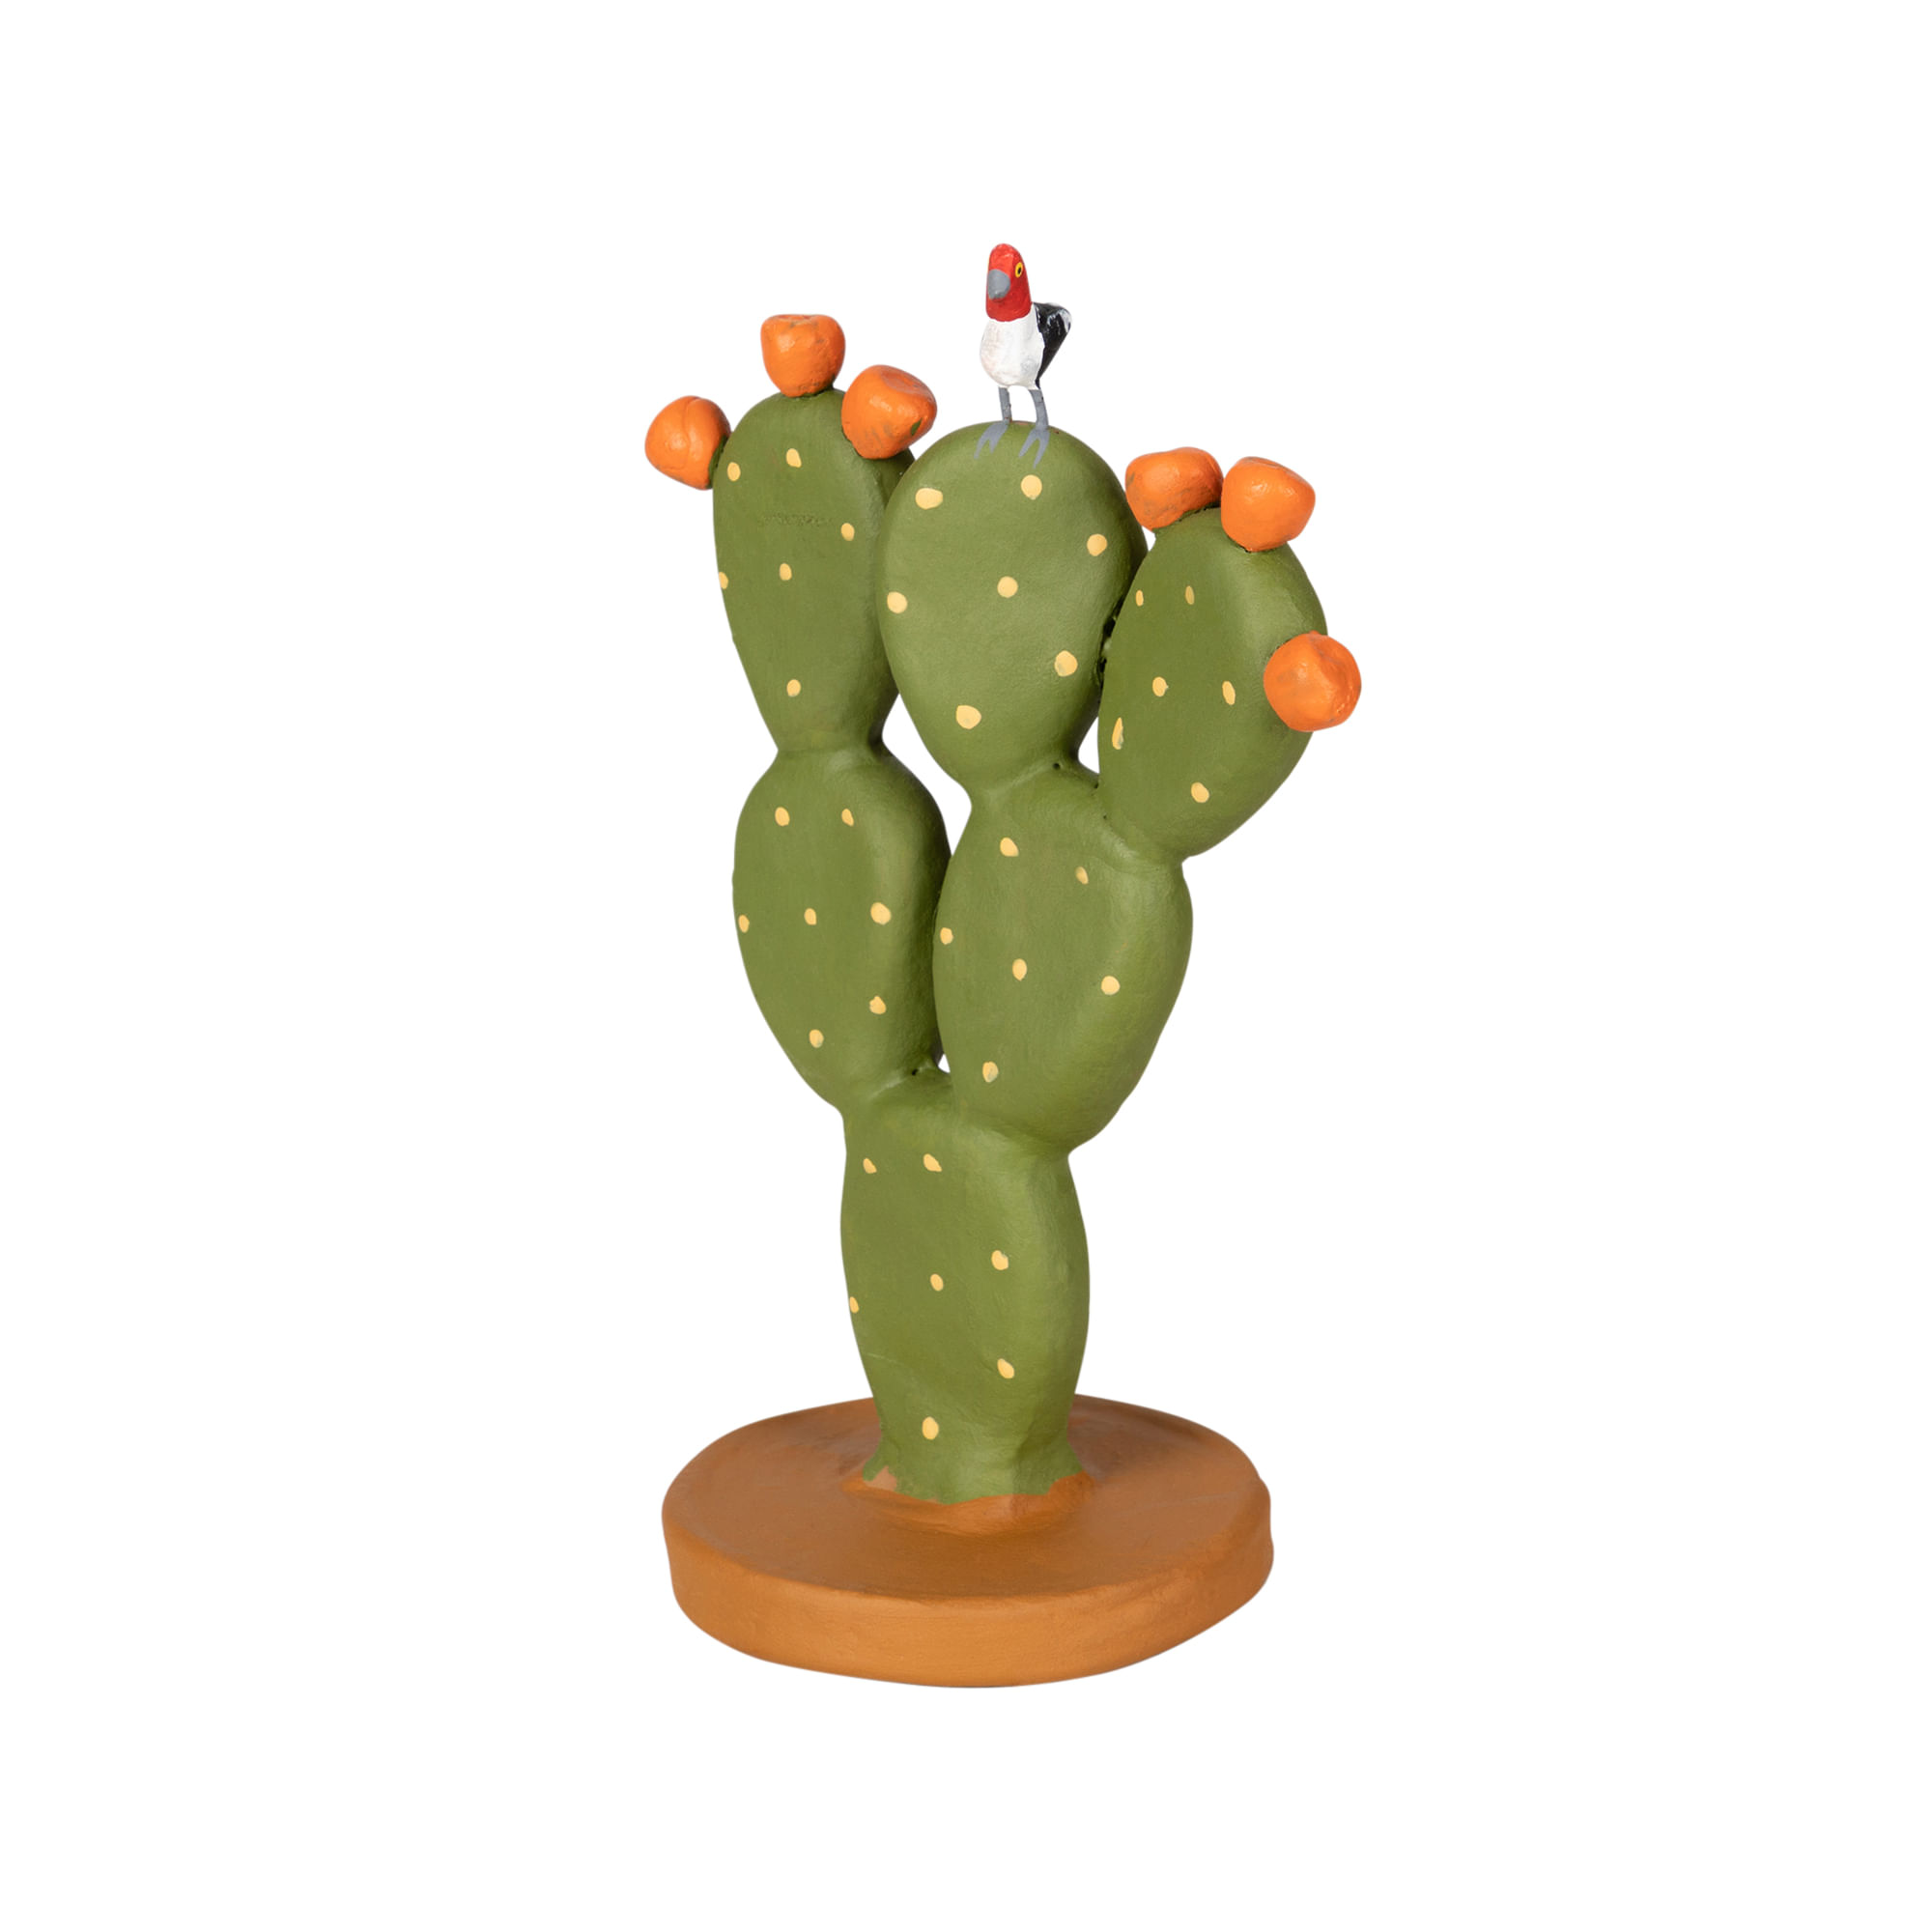 Prickly pear cactus  Arte com cactos, Fotos de cactos, Pintura de